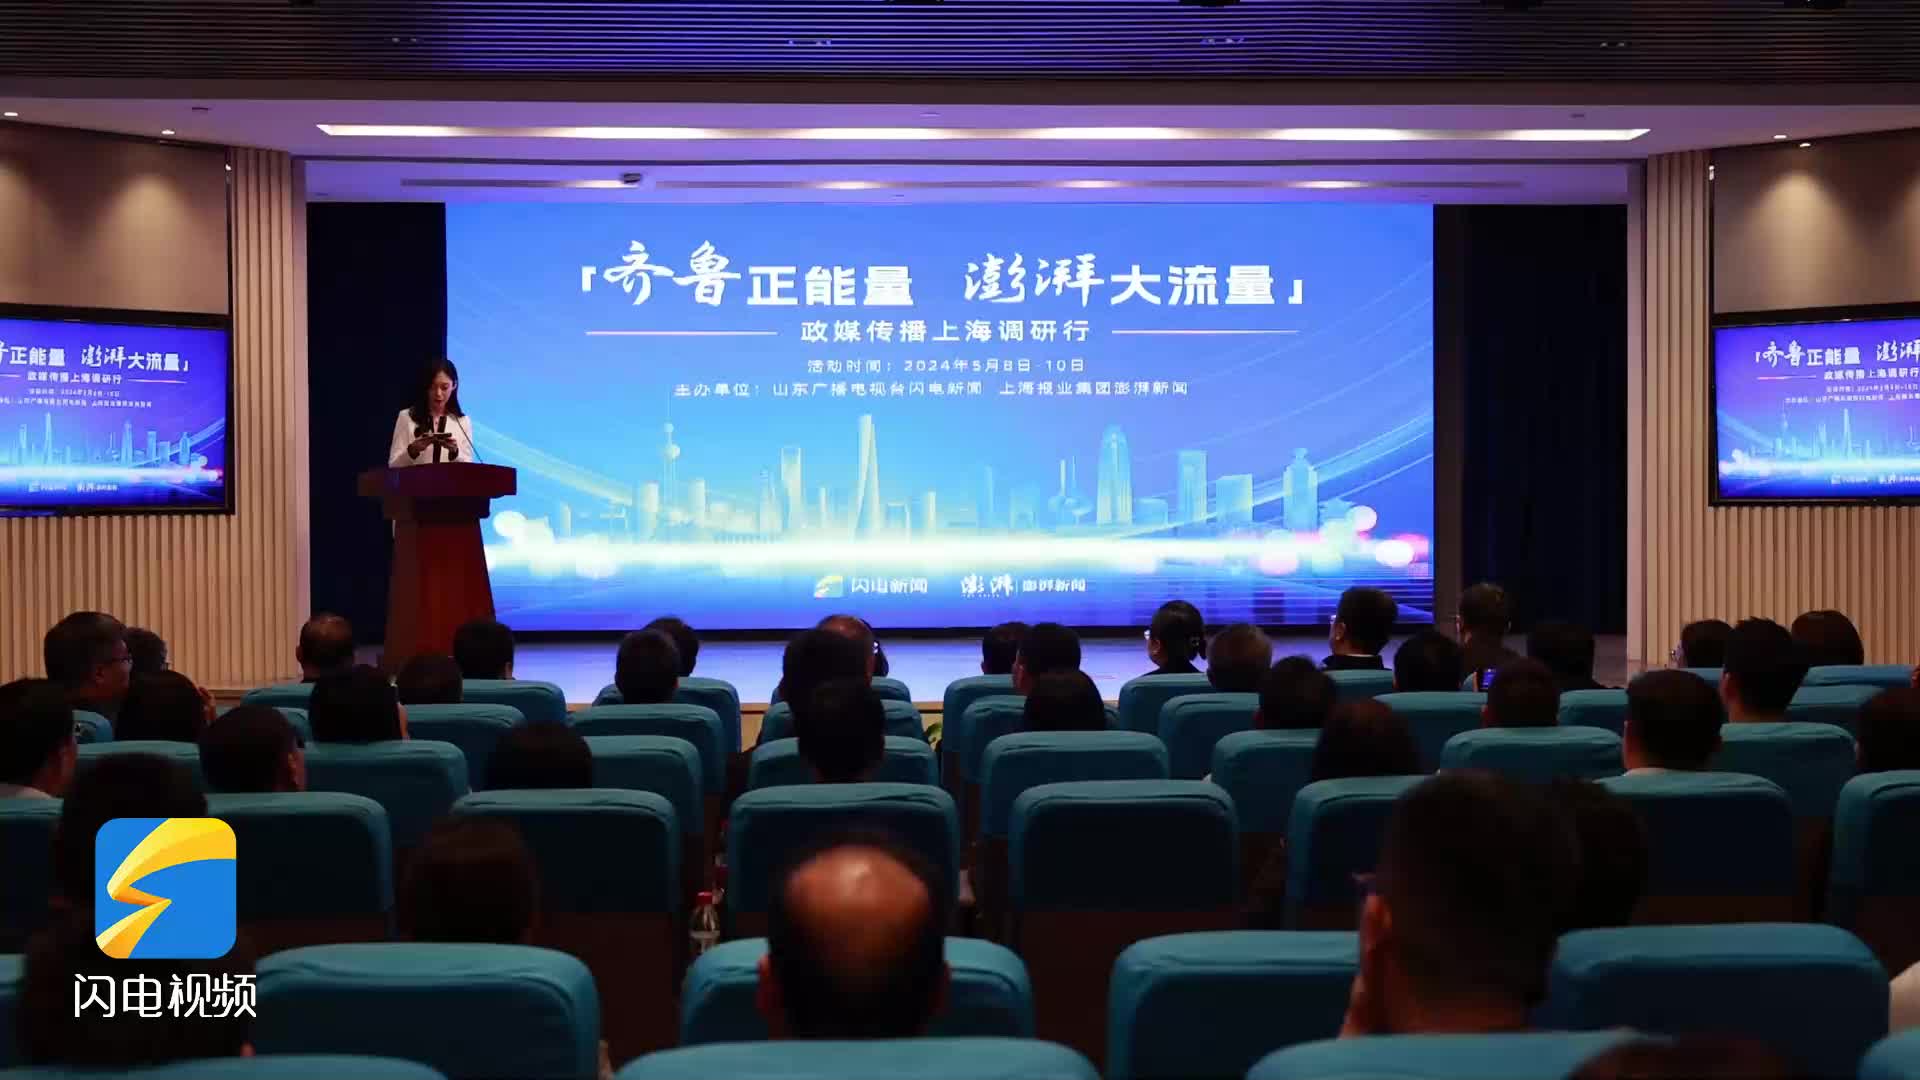 聚焦影响力提升 山东政媒传播上海调研座谈会召开